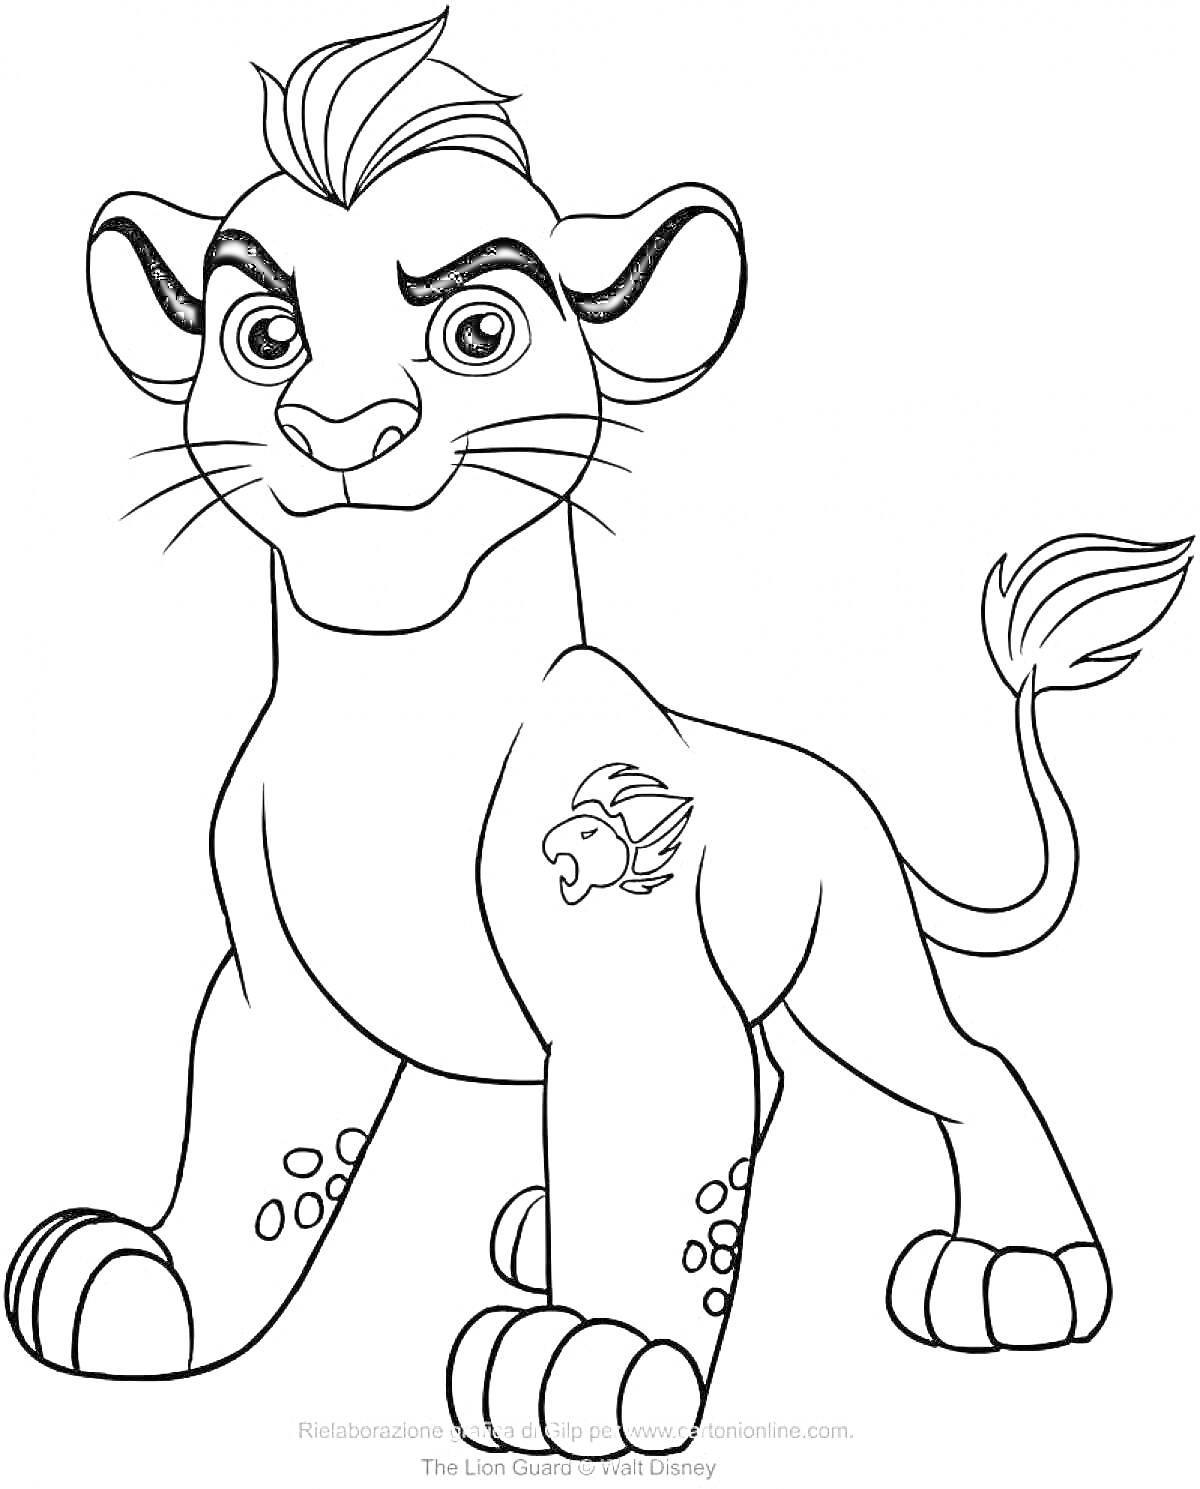 Раскраска Детеныш льва с отметкой на ноге и хвосте